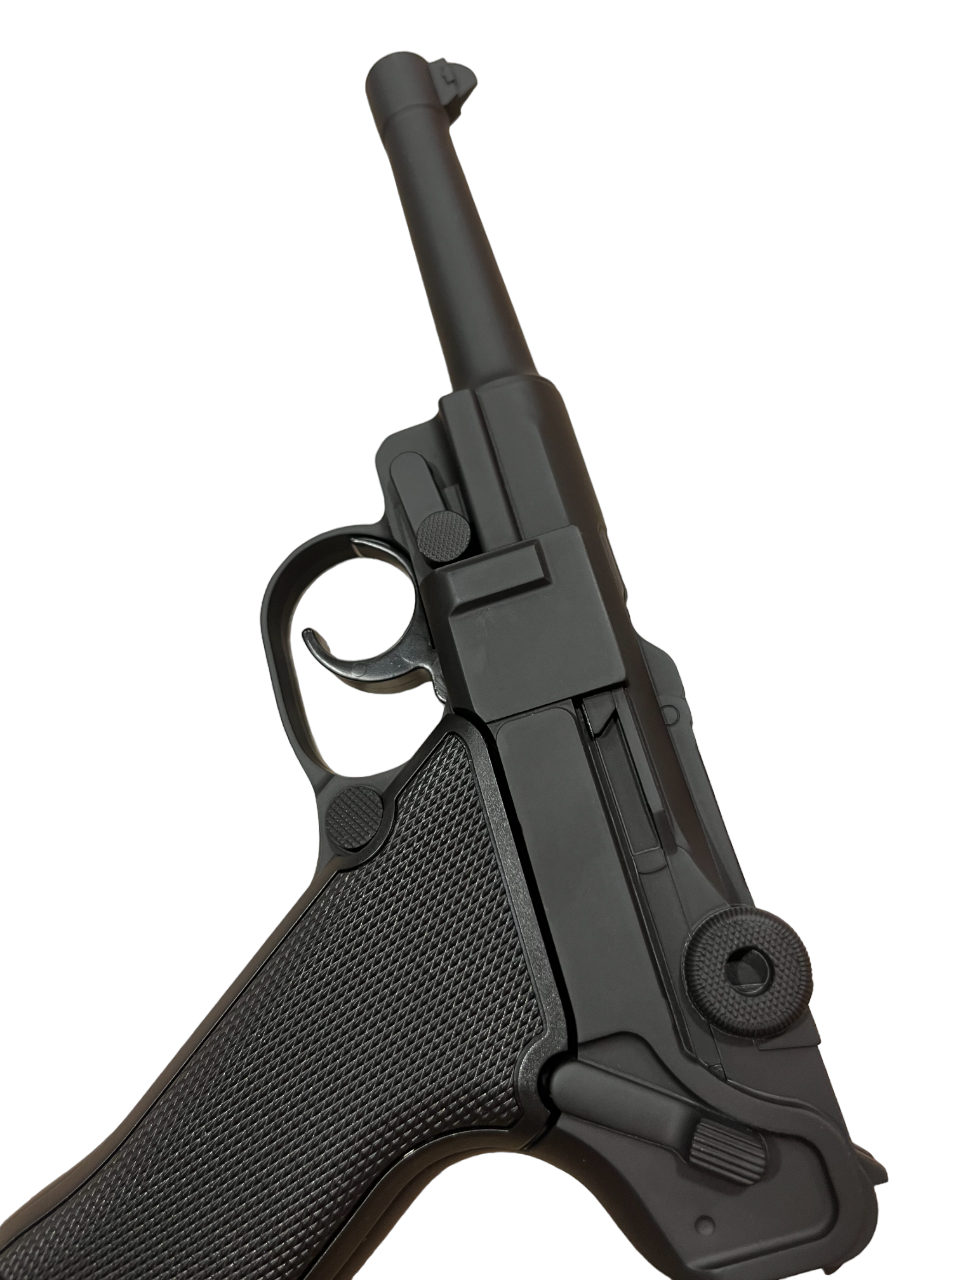 Hwasan P08 Co2 Air Pistol (4.5mm – Black – Full Metal)